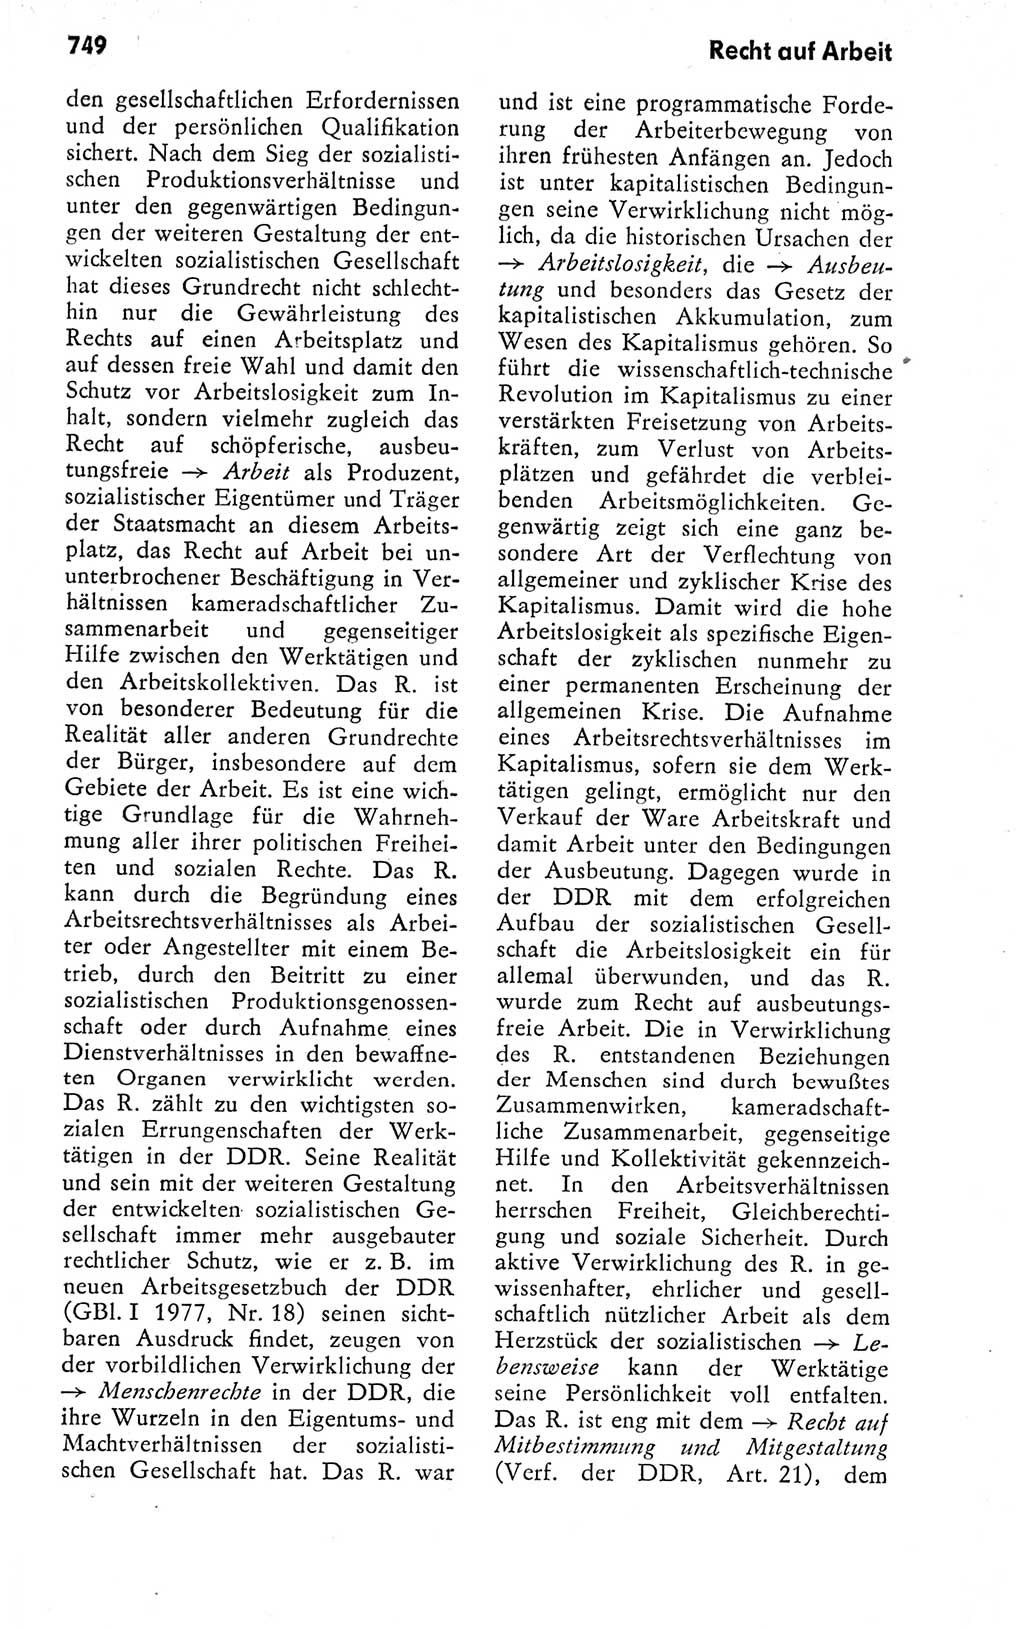 Kleines politisches Wörterbuch [Deutsche Demokratische Republik (DDR)] 1978, Seite 749 (Kl. pol. Wb. DDR 1978, S. 749)